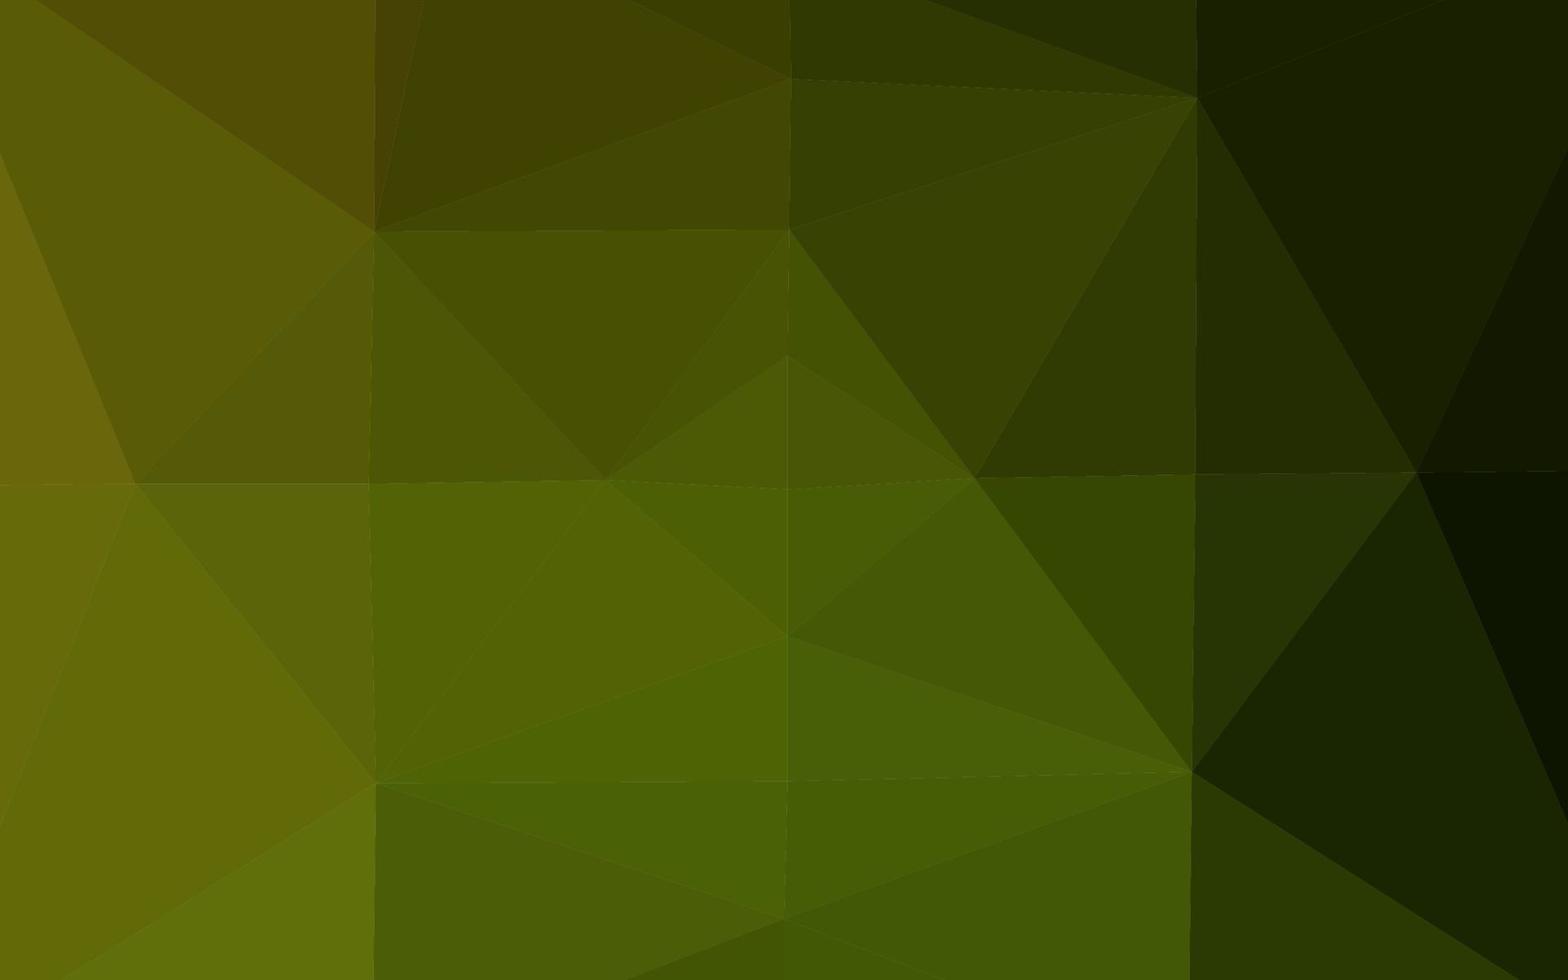 vetor verde escuro e amarelo brilhante padrão triangular.